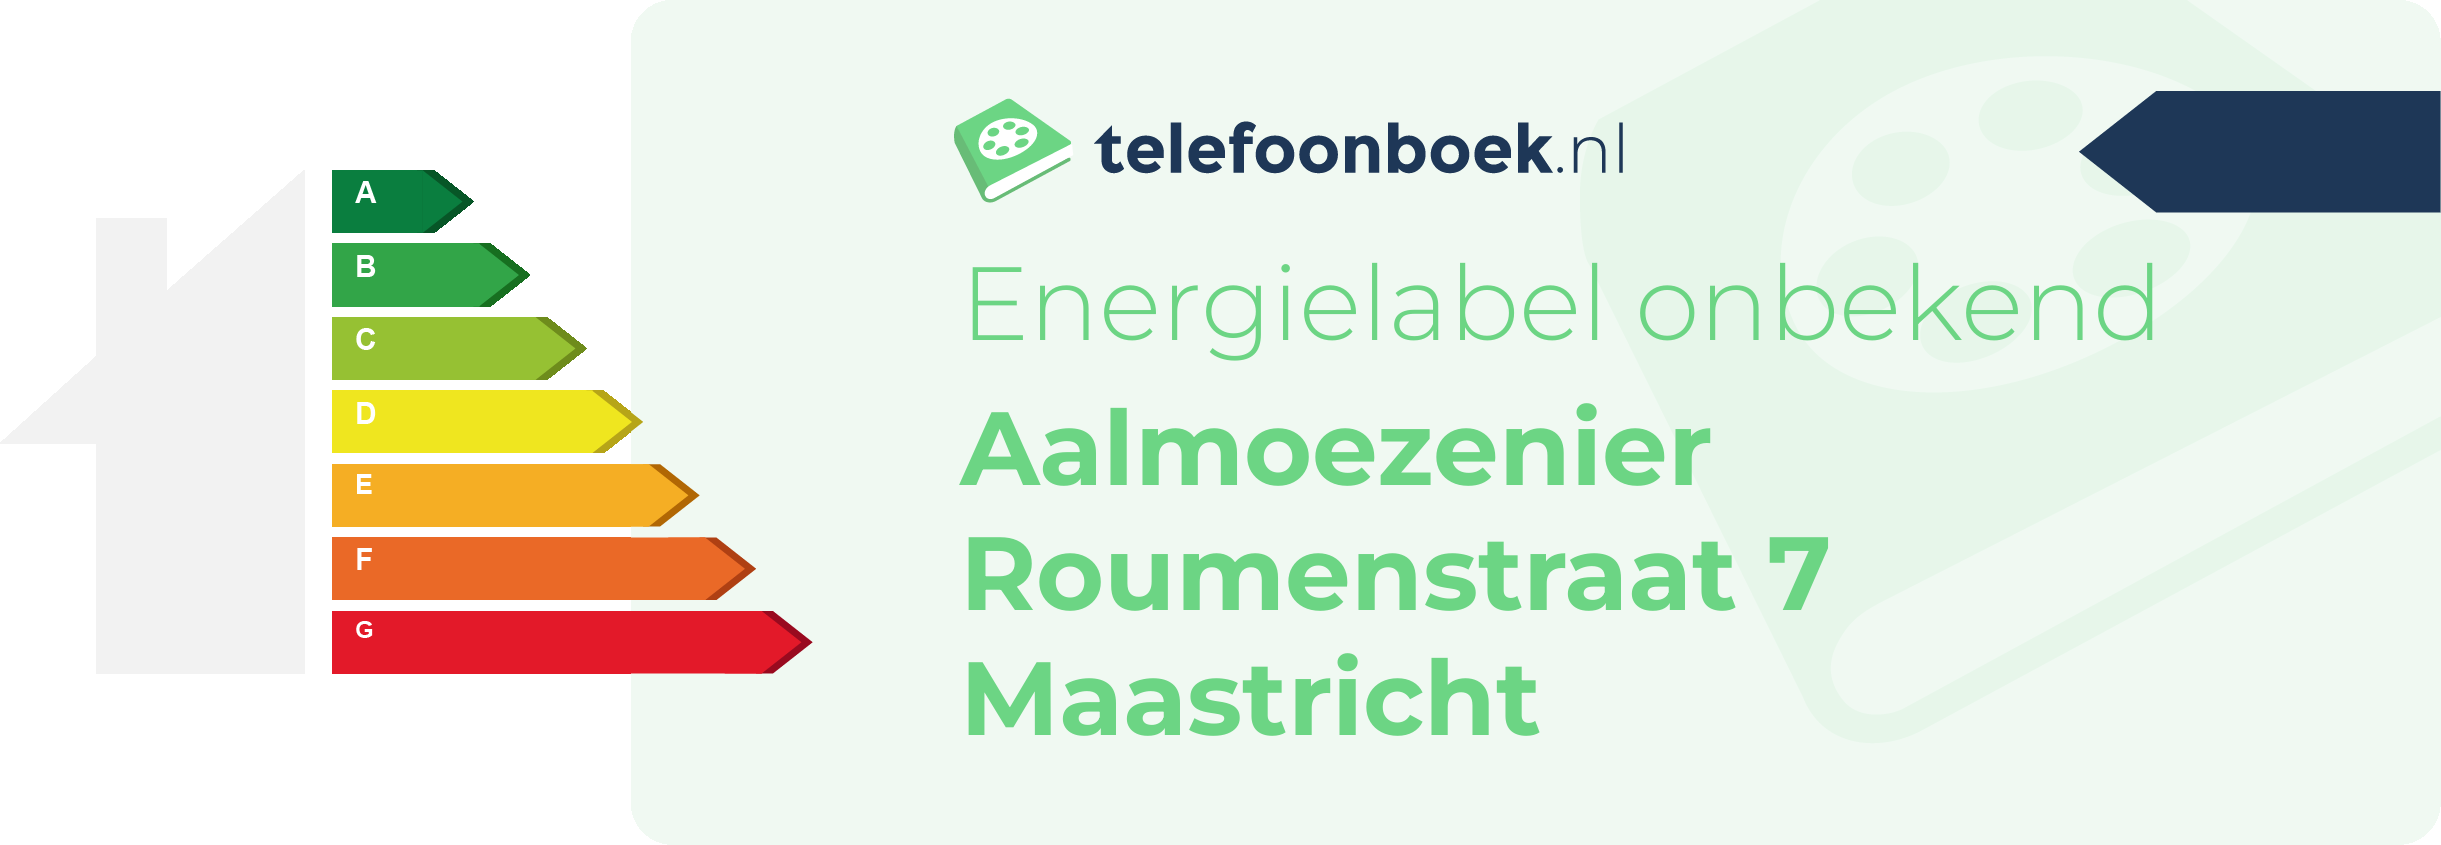 Energielabel Aalmoezenier Roumenstraat 7 Maastricht